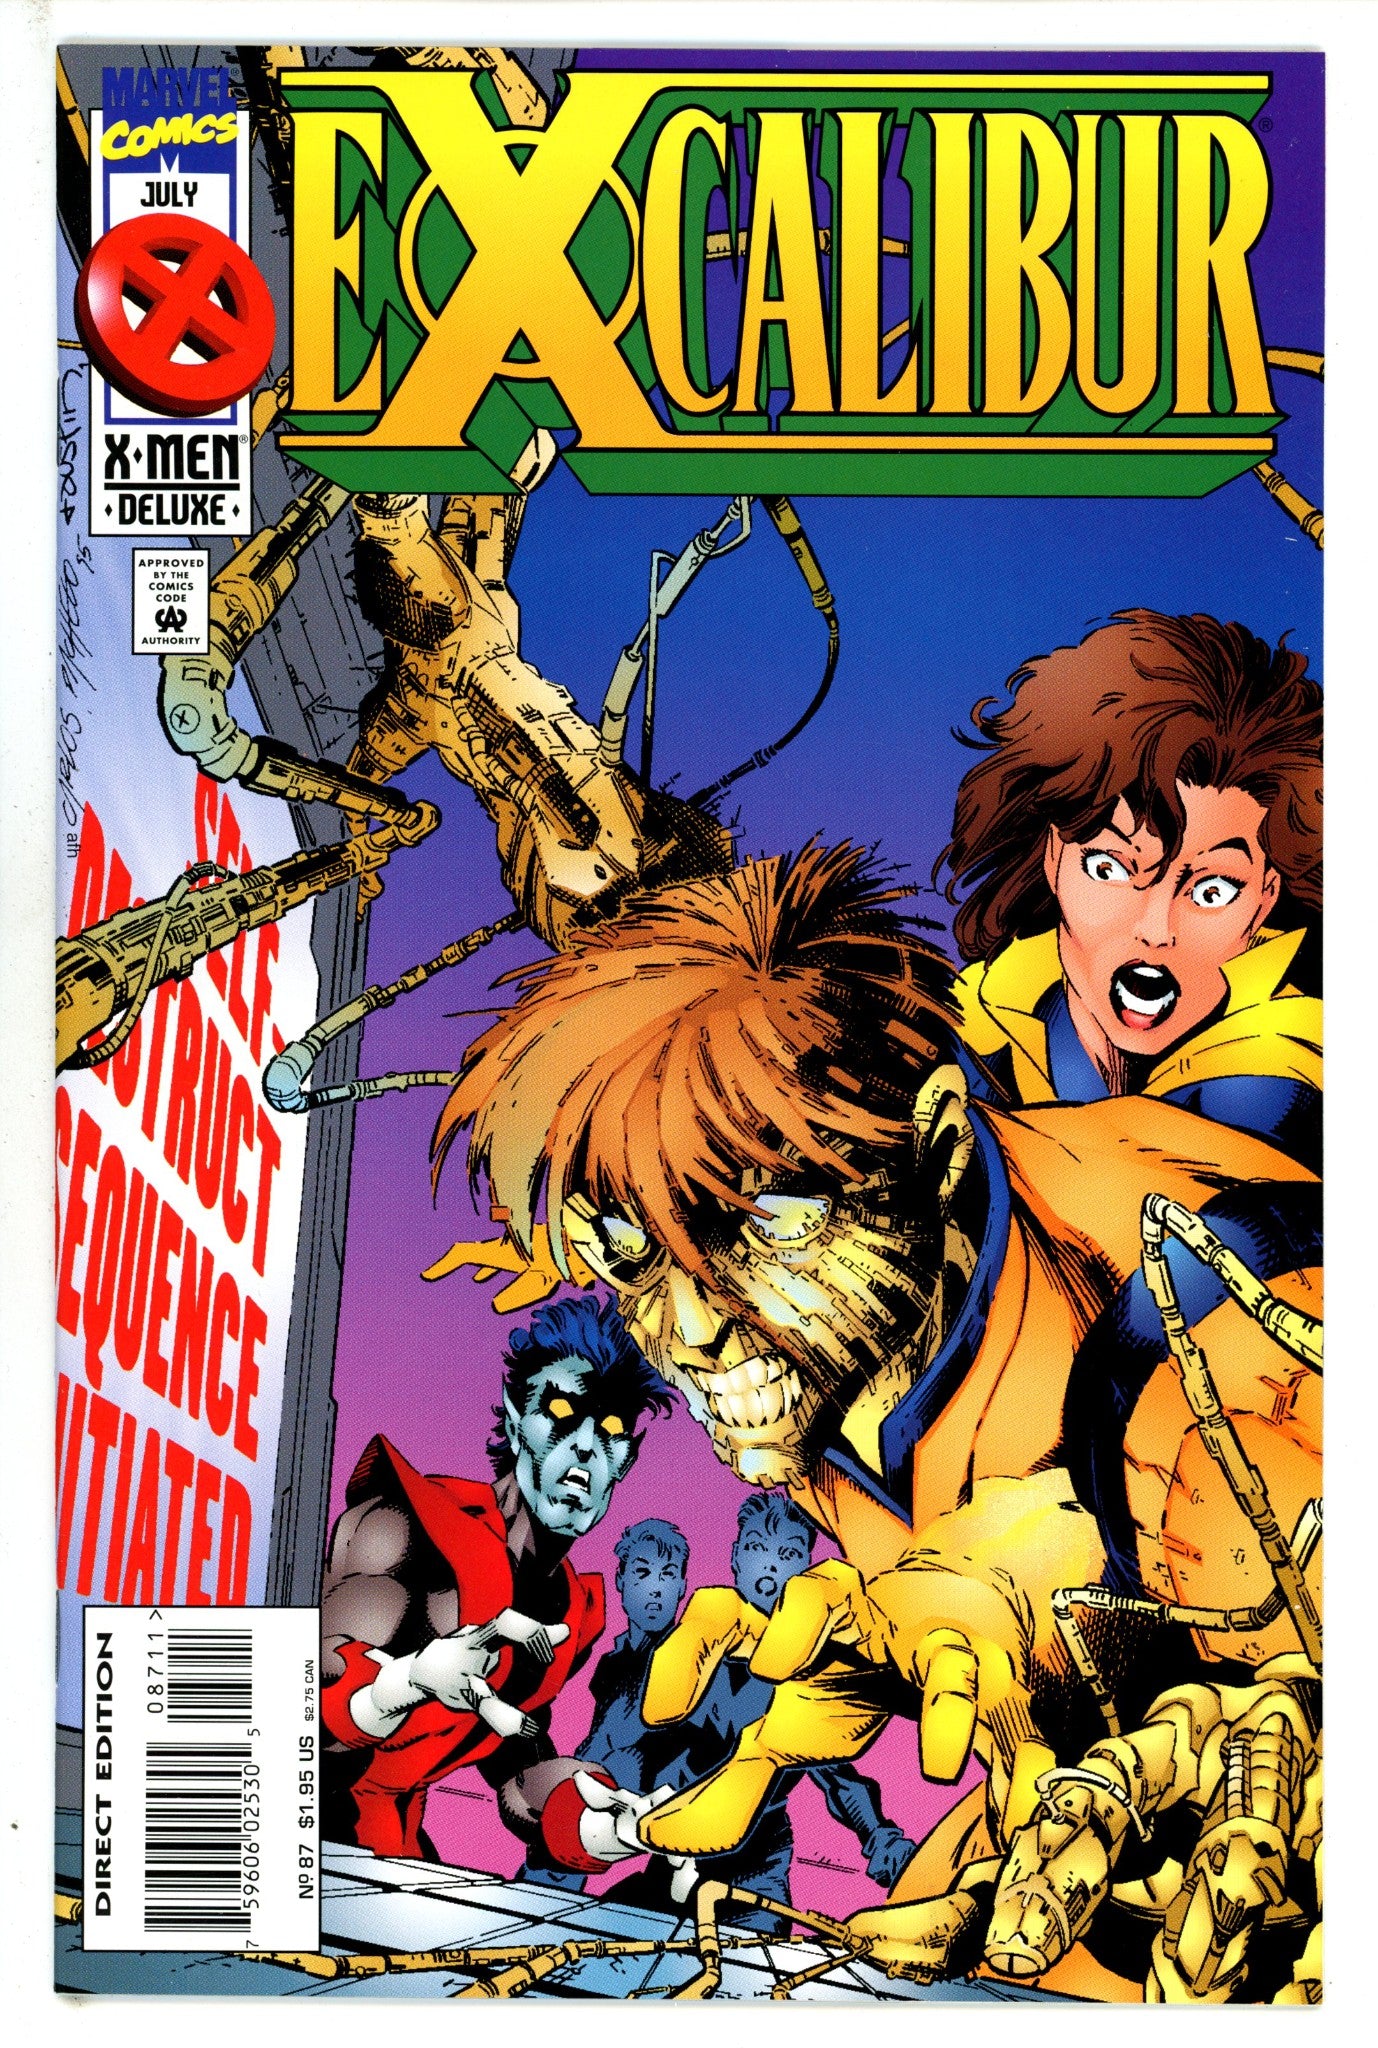 Excalibur Vol 1 87 (1995)